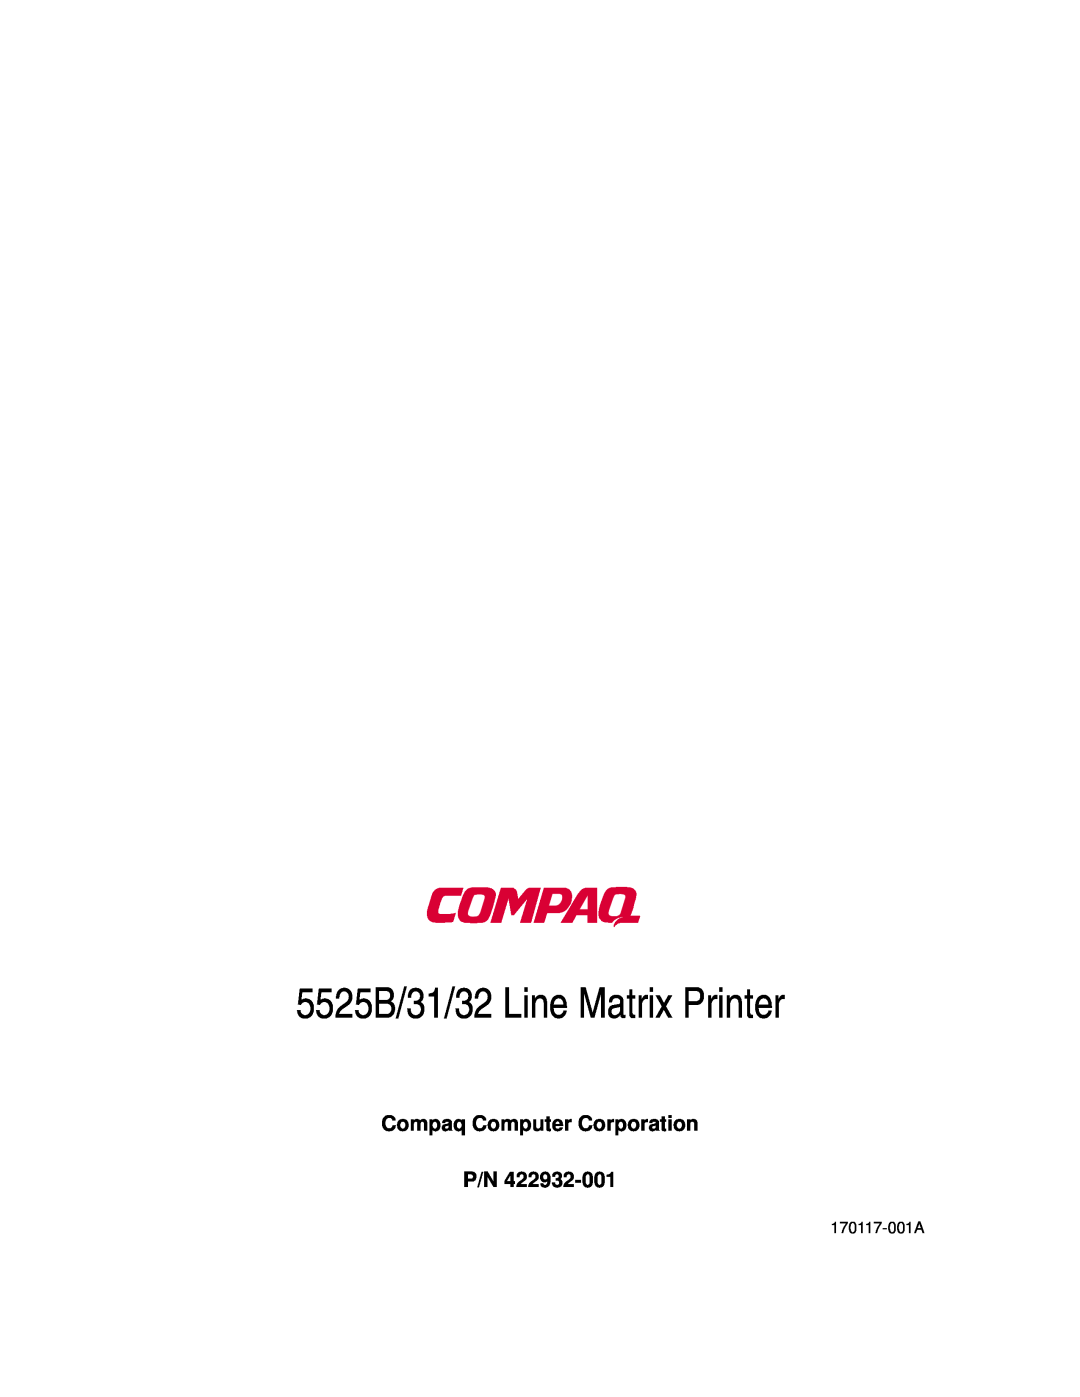 Compaq manual 5525B/31/32 Line Matrix Printer, Compaq Computer Corporation P/N 